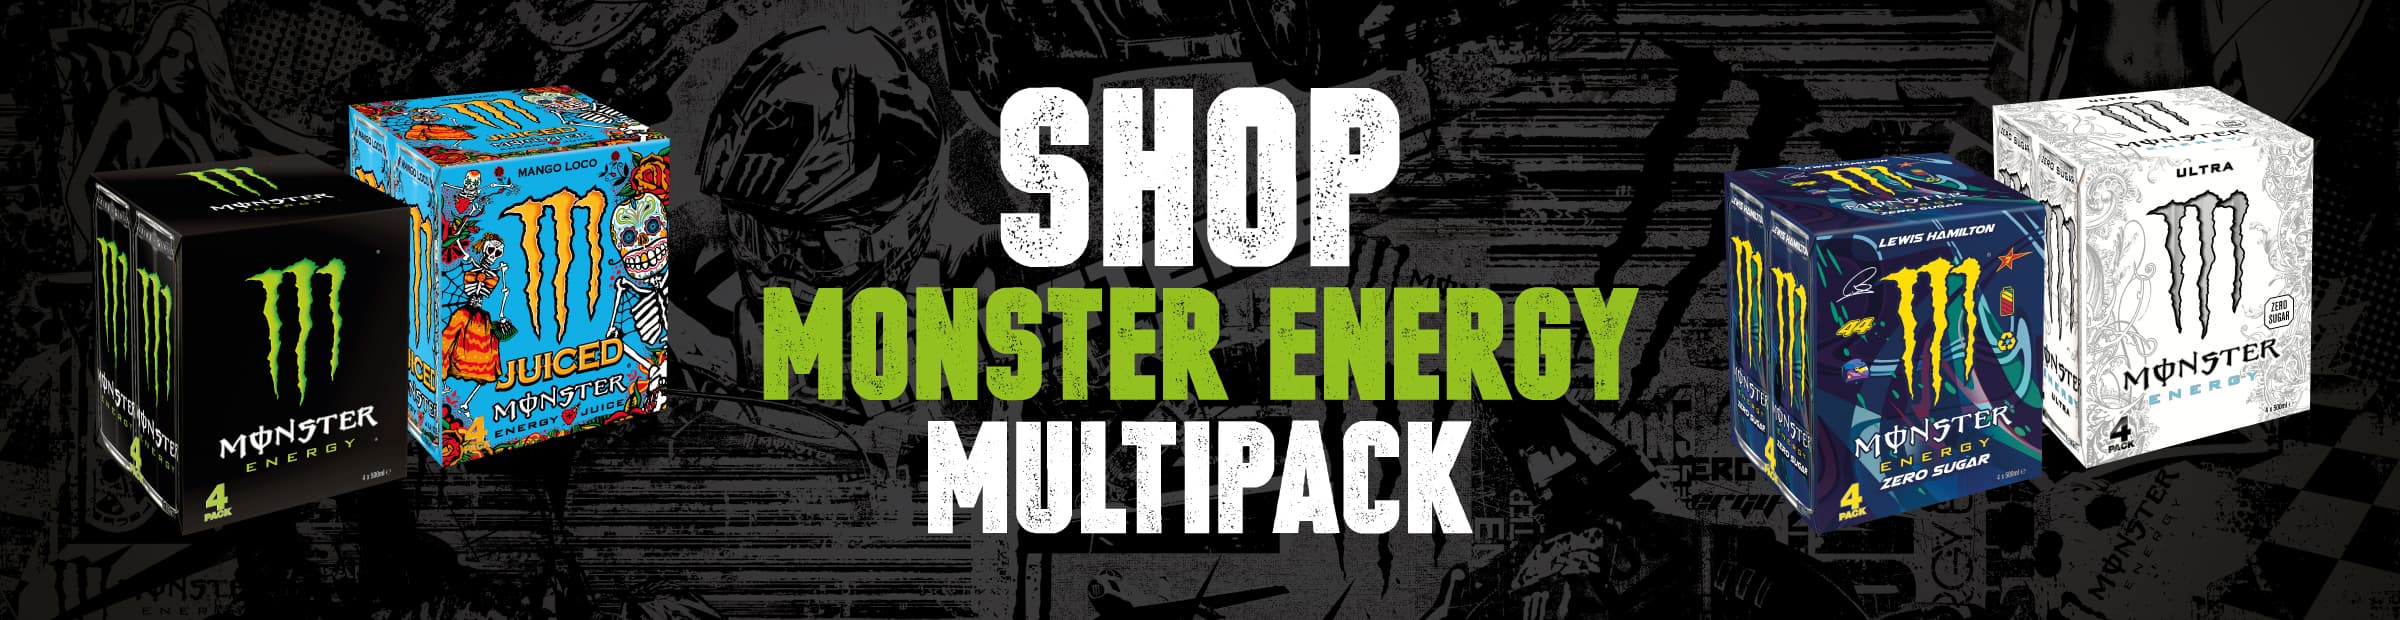 Shop Monster Energy multipack